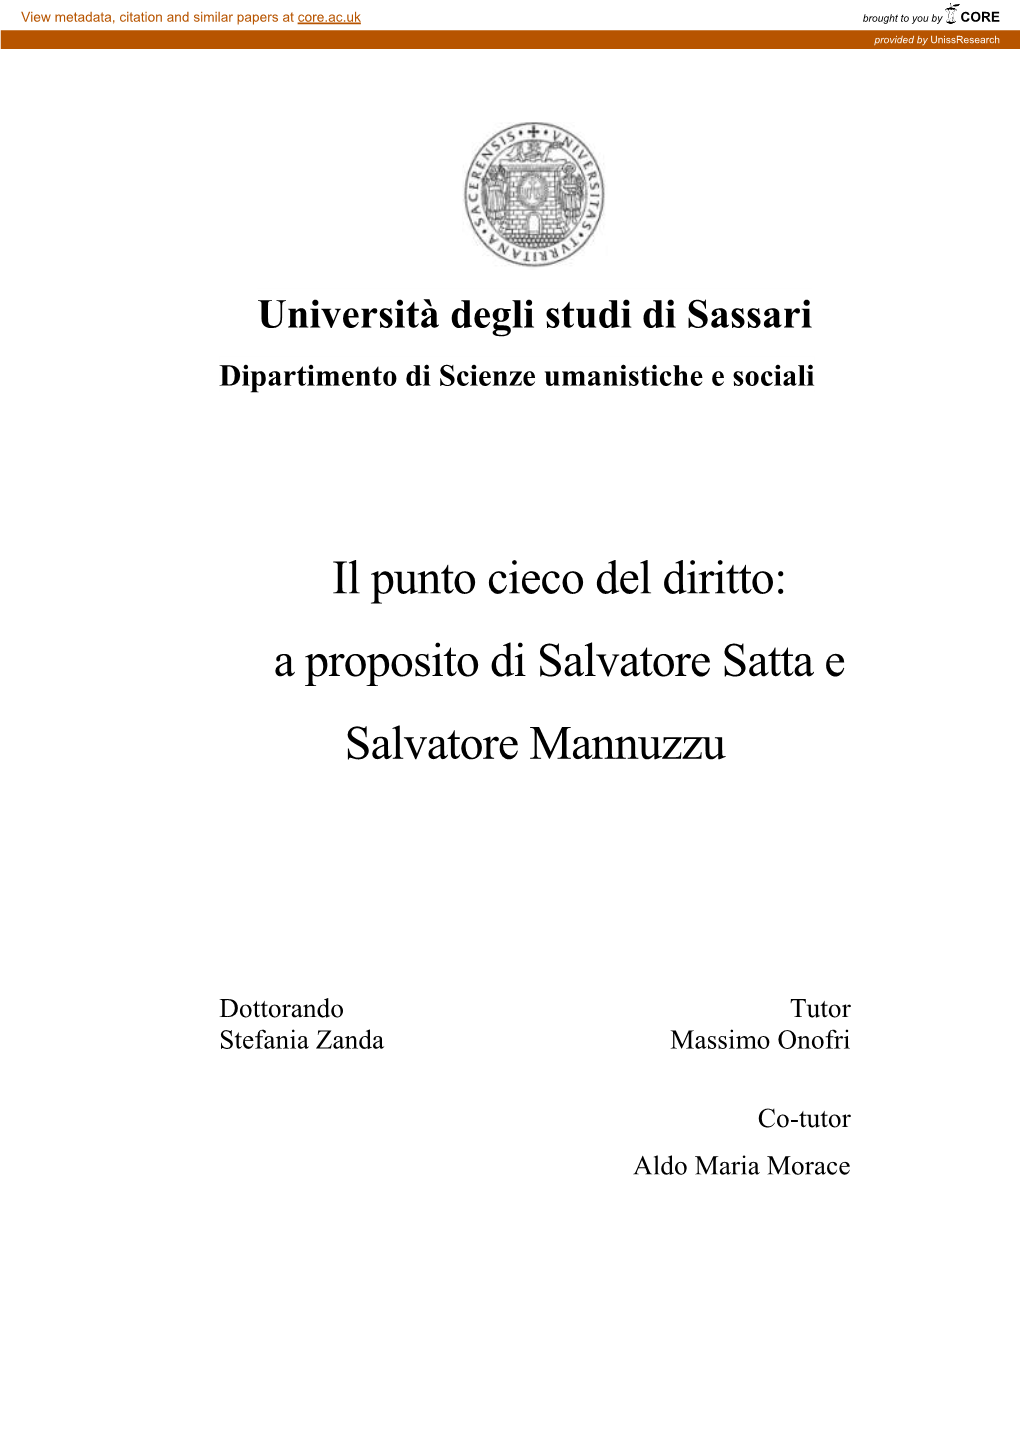 Il Punto Cieco Del Diritto: a Proposito Di Salvatore Satta E Salvatore Mannuzzu